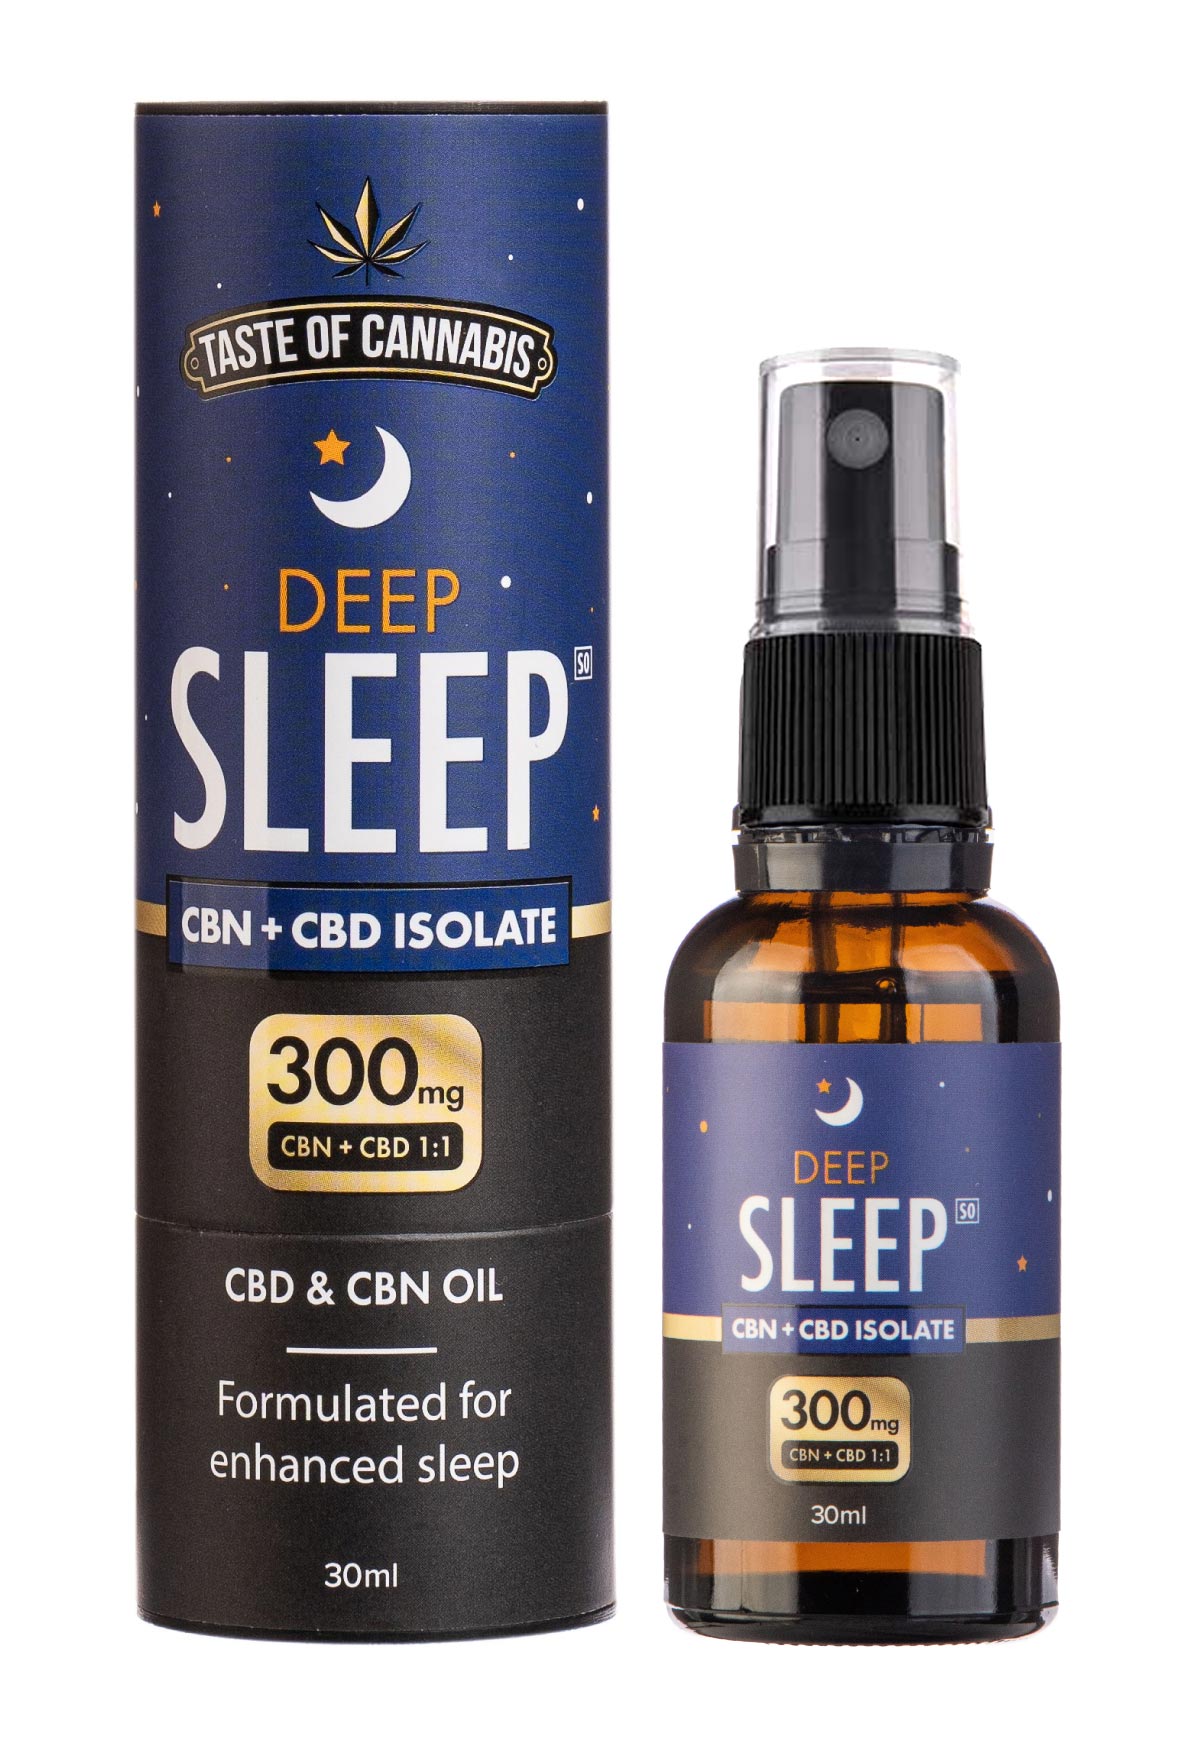 Taste of Cannabis Deep Sleep CBD + CBN Oil